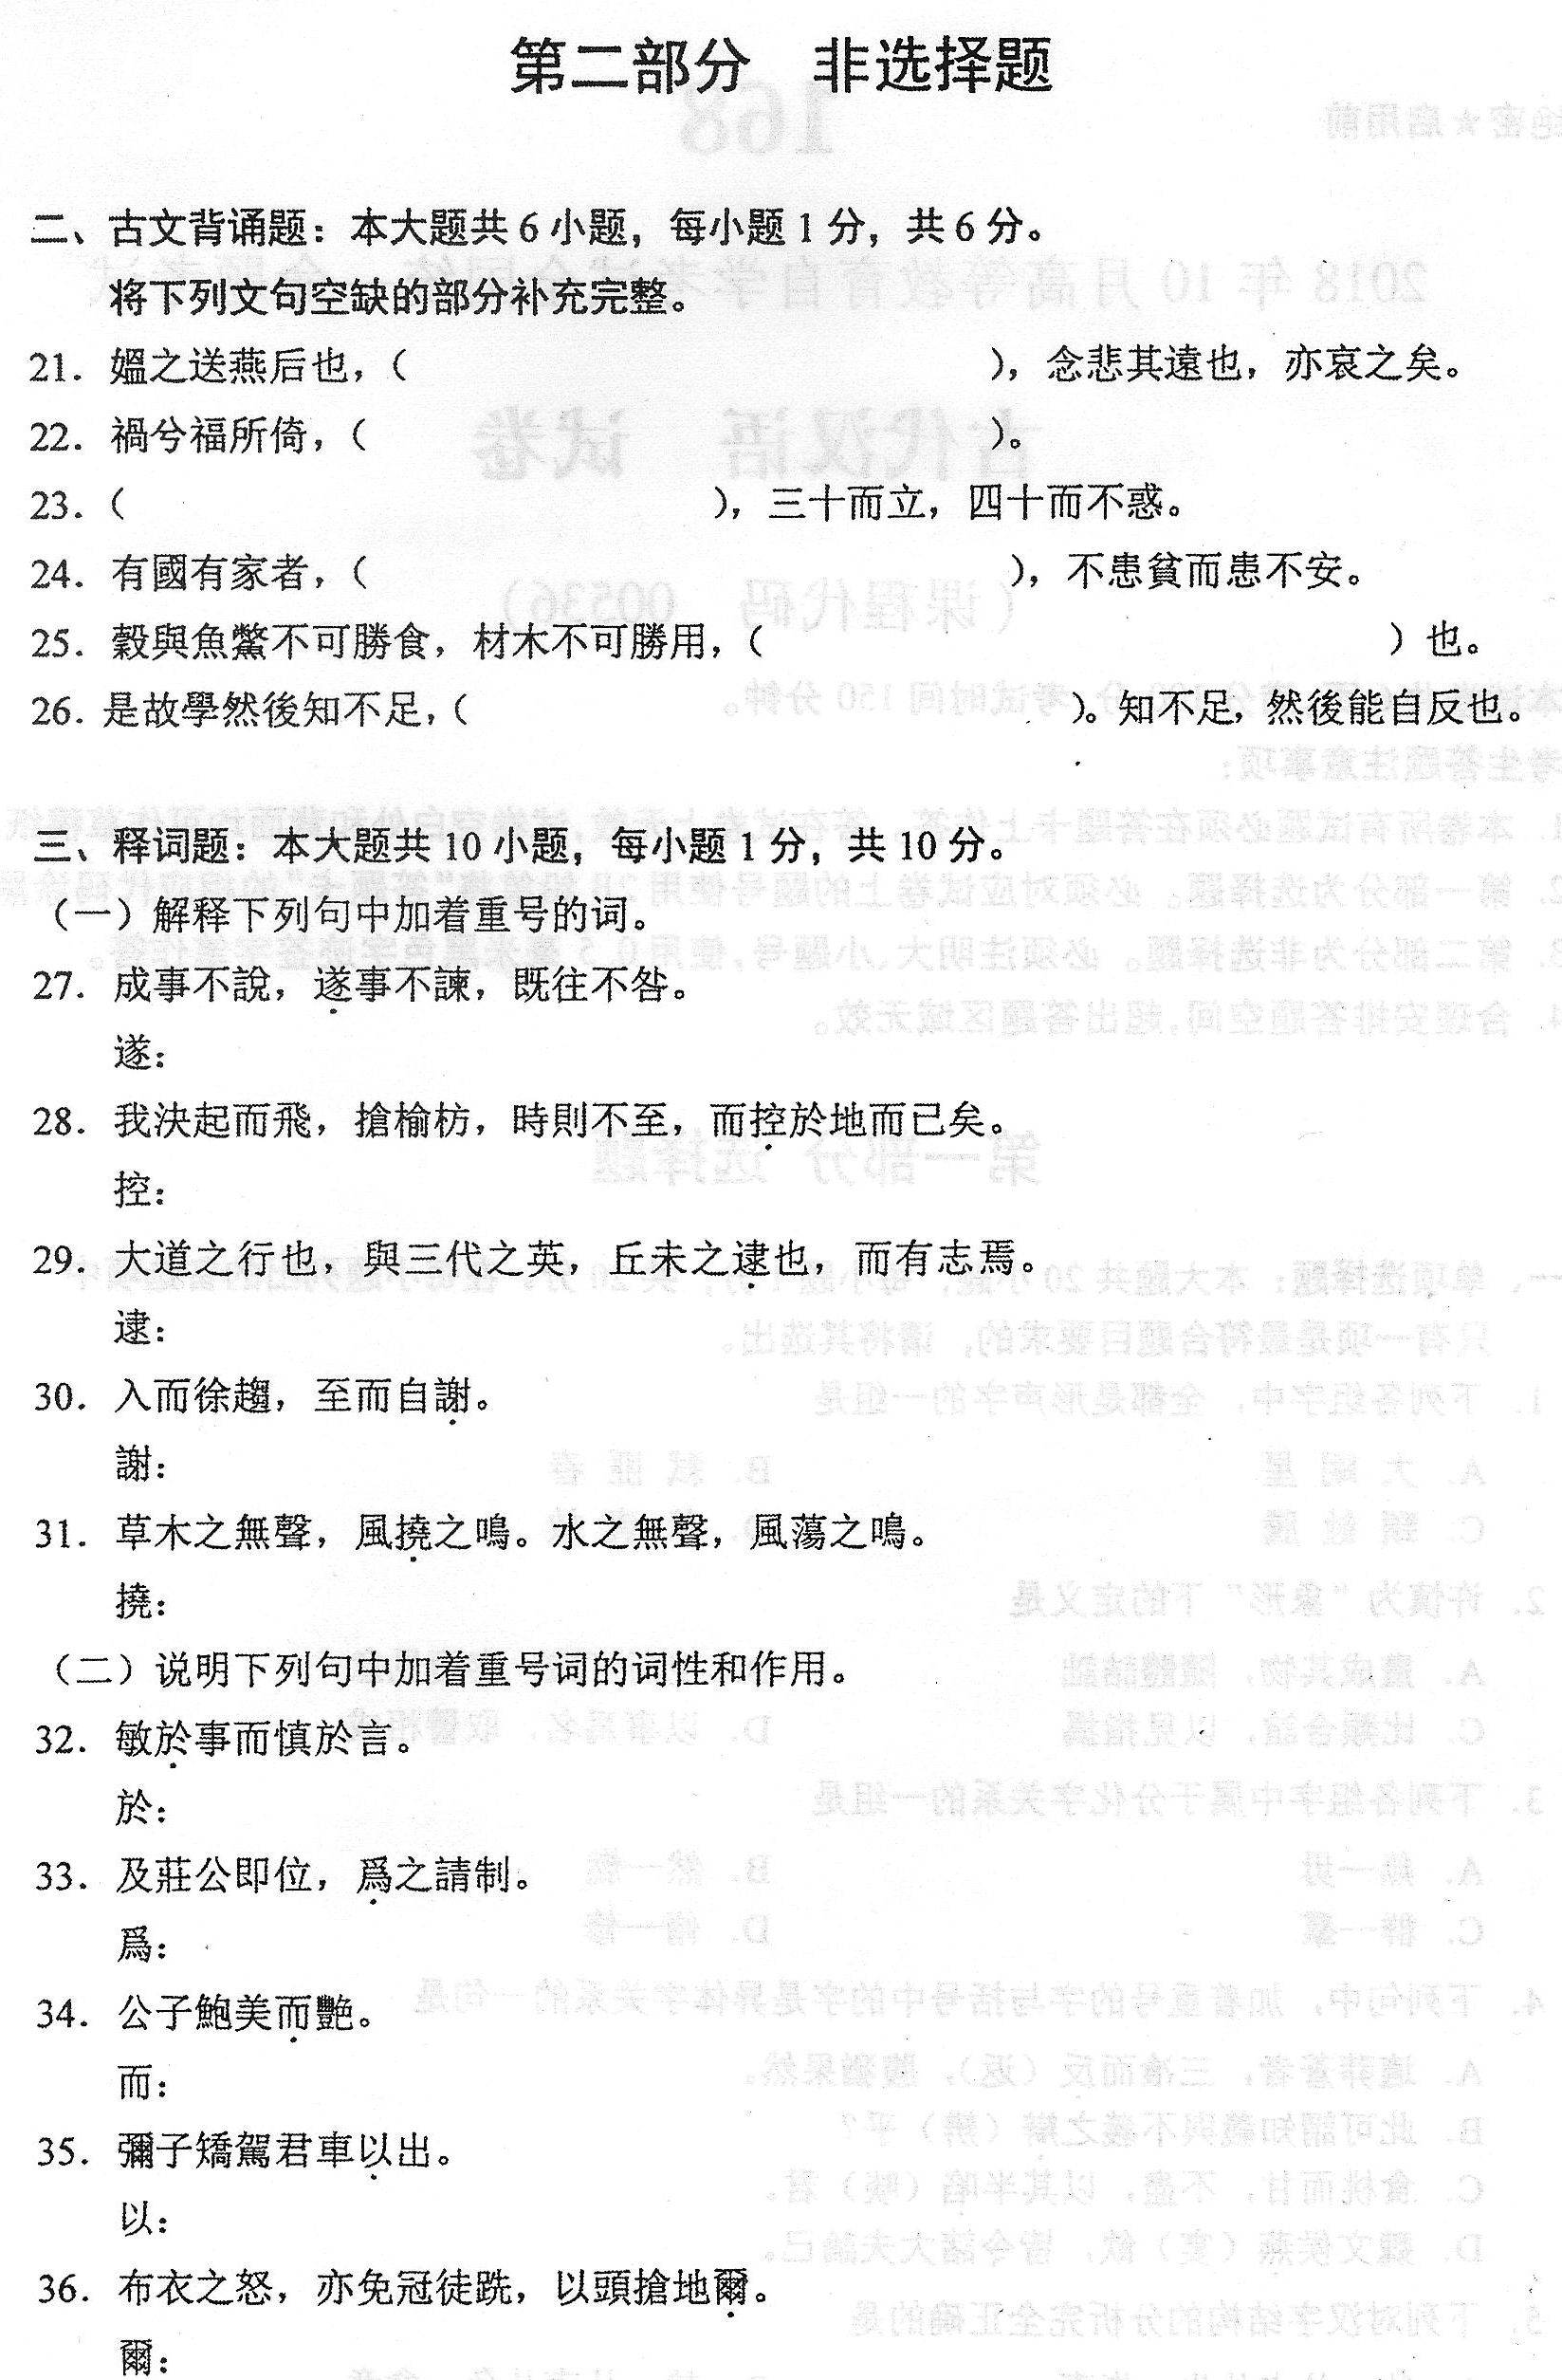 2018年10月贵州省自考00536古代汉语真题及答案